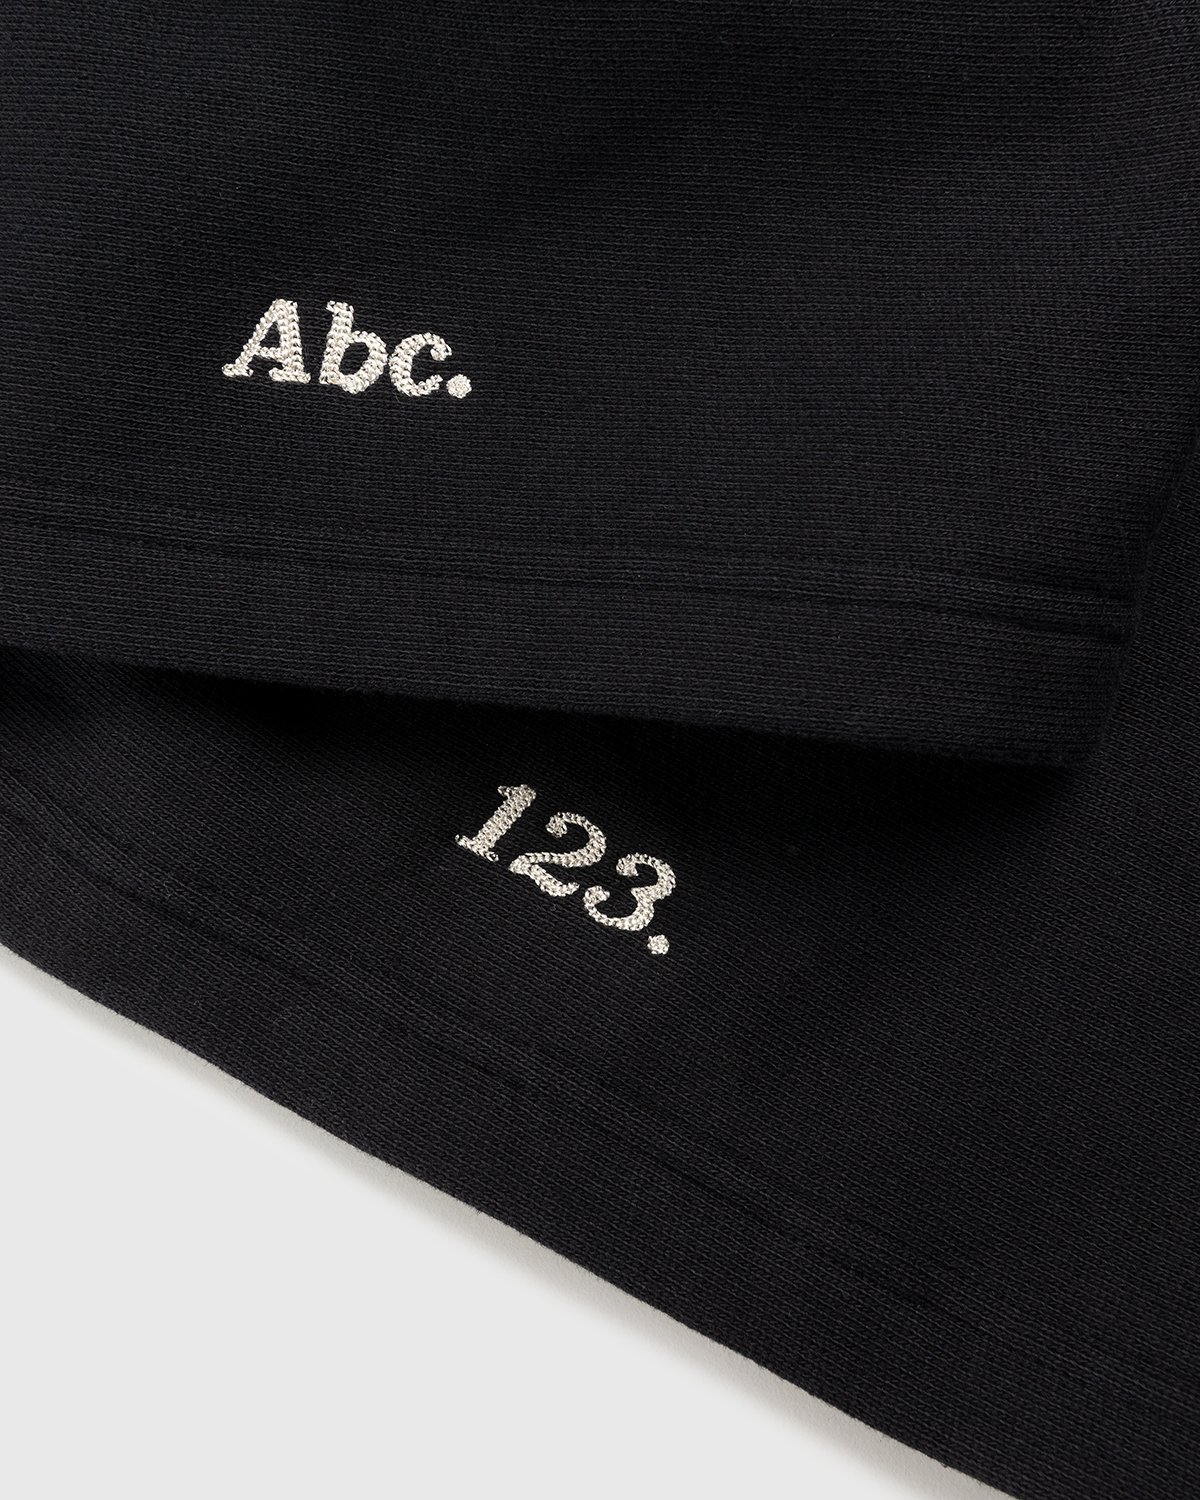 Abc. - Fleece Sweatshorts Anthracite - Clothing - Black - Image 6